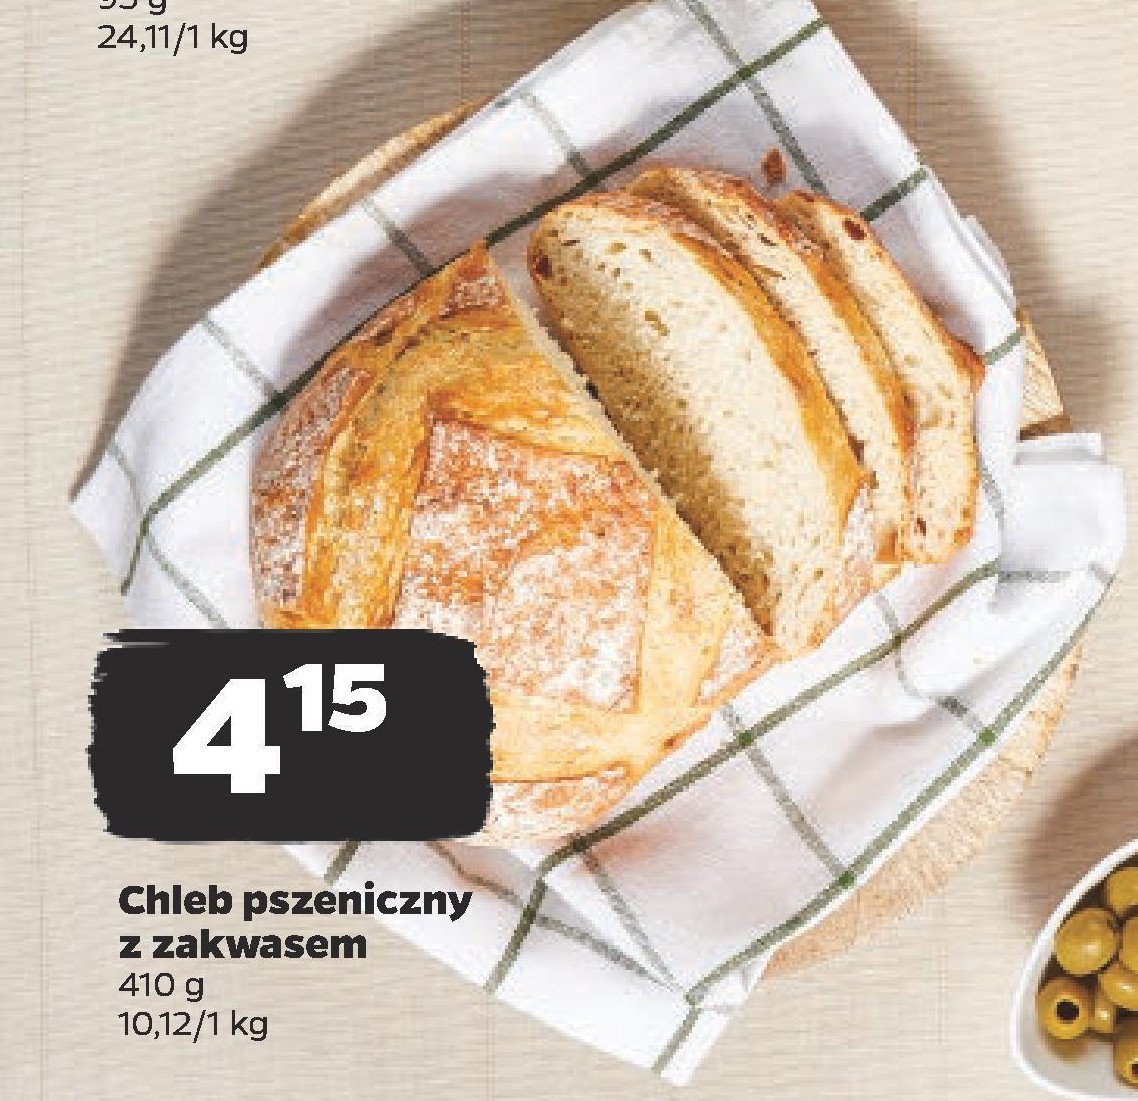 Chleb pszeniczny z zakwasem Z naszej piekarni kaufland promocja